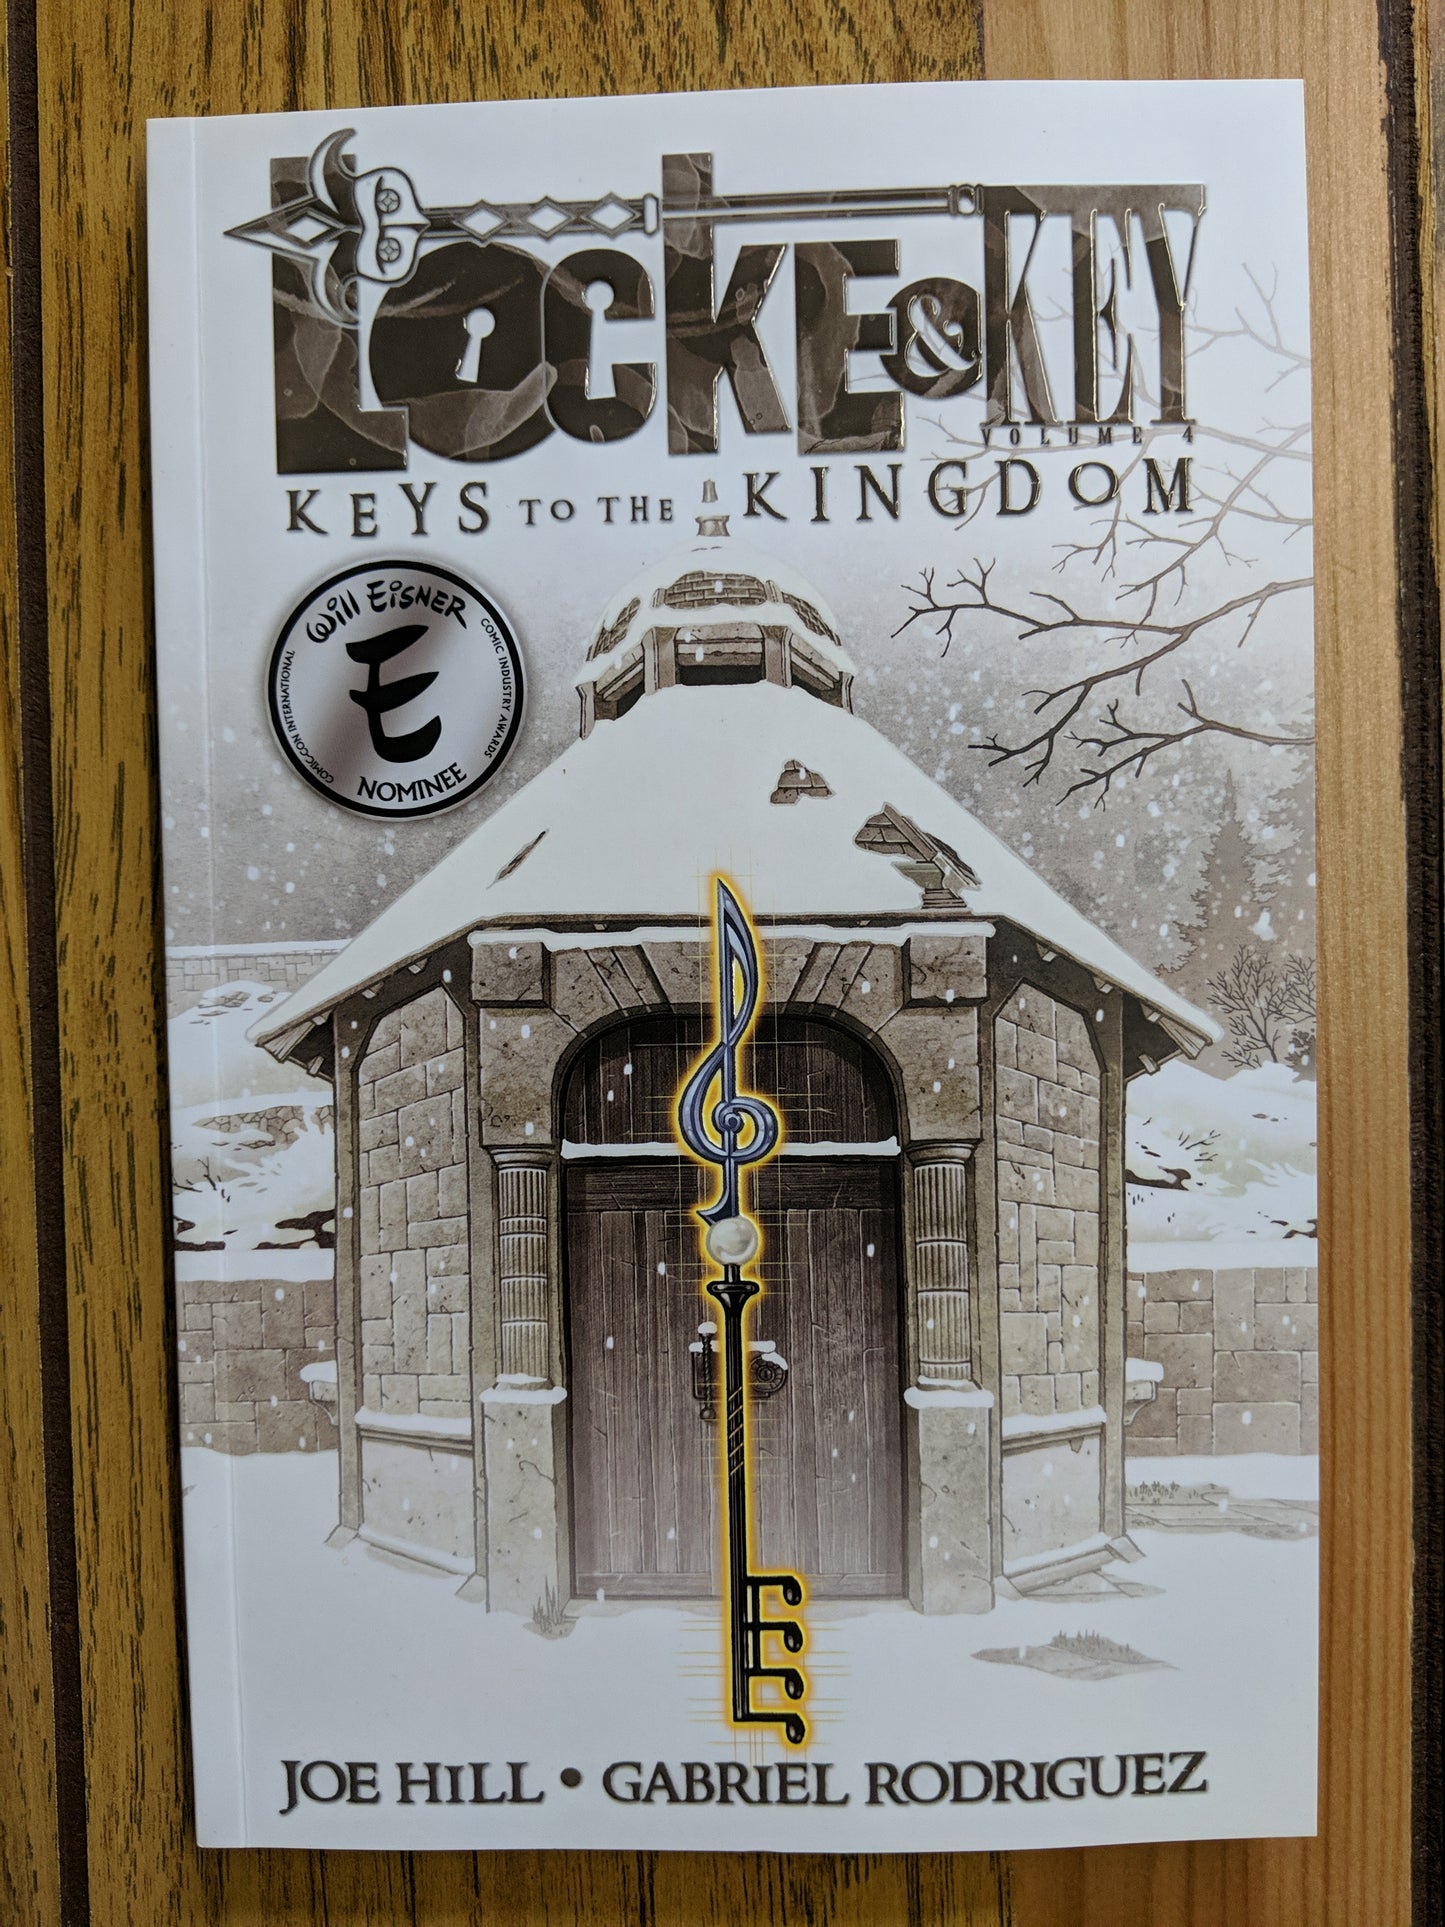 Locke & Key Vol 4: Keys to the Kingdom